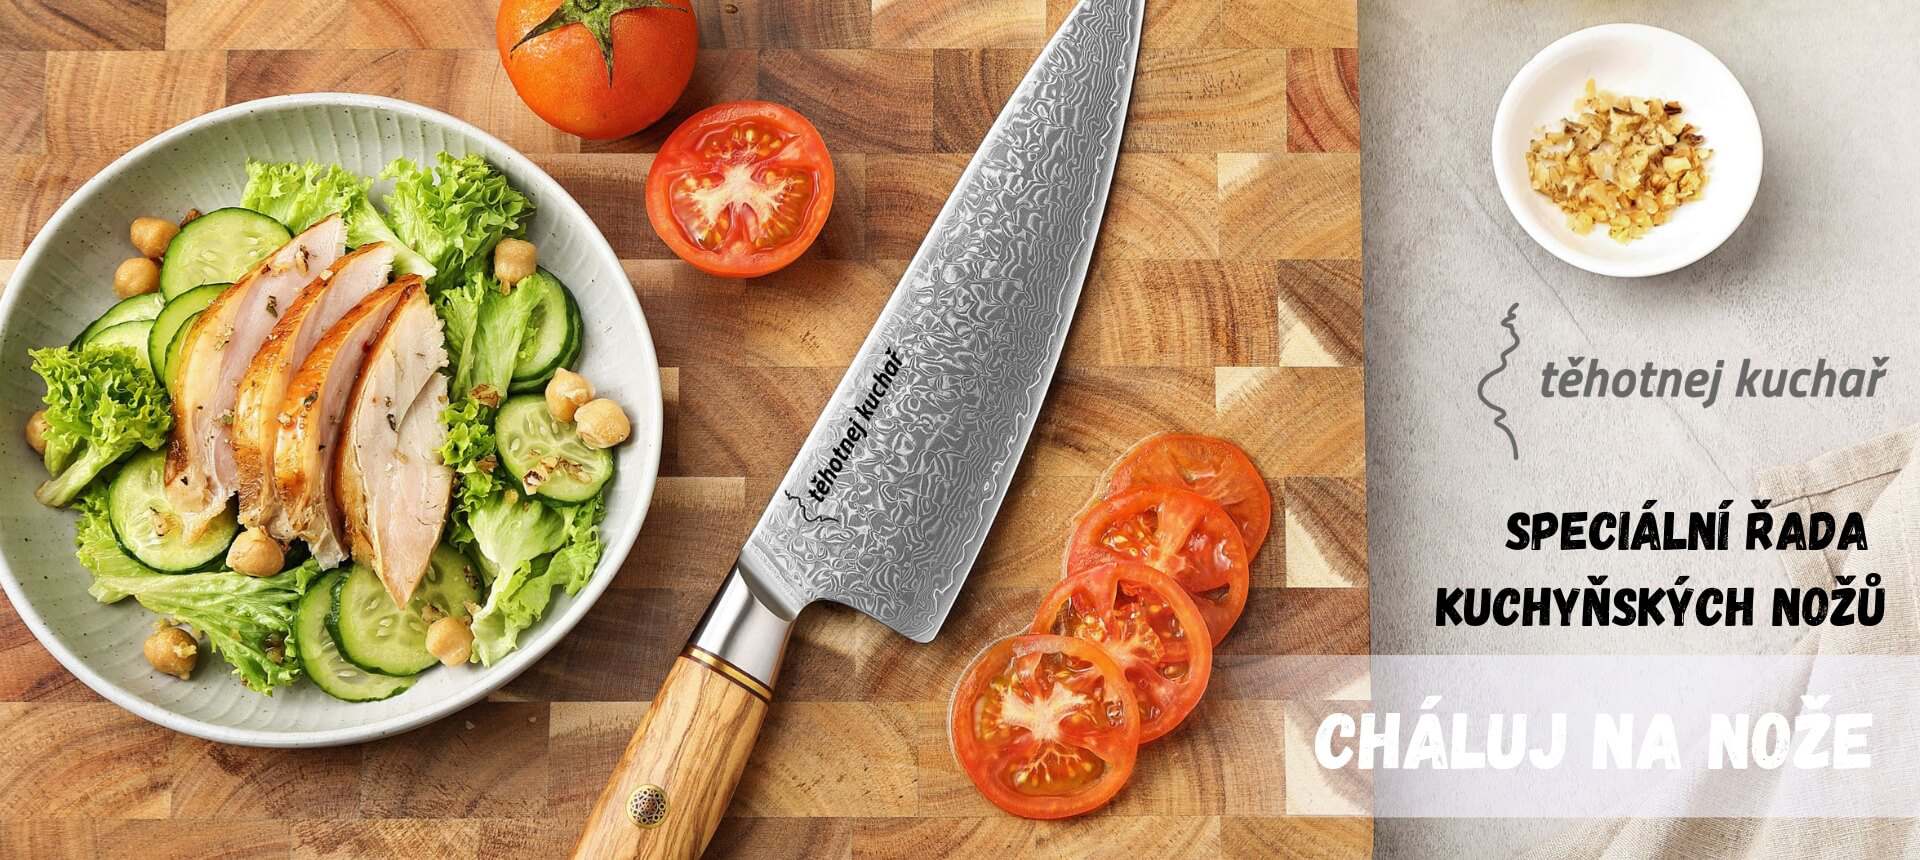 Kuchyňské nože z řady Těhotnej kuchař s gravírováním